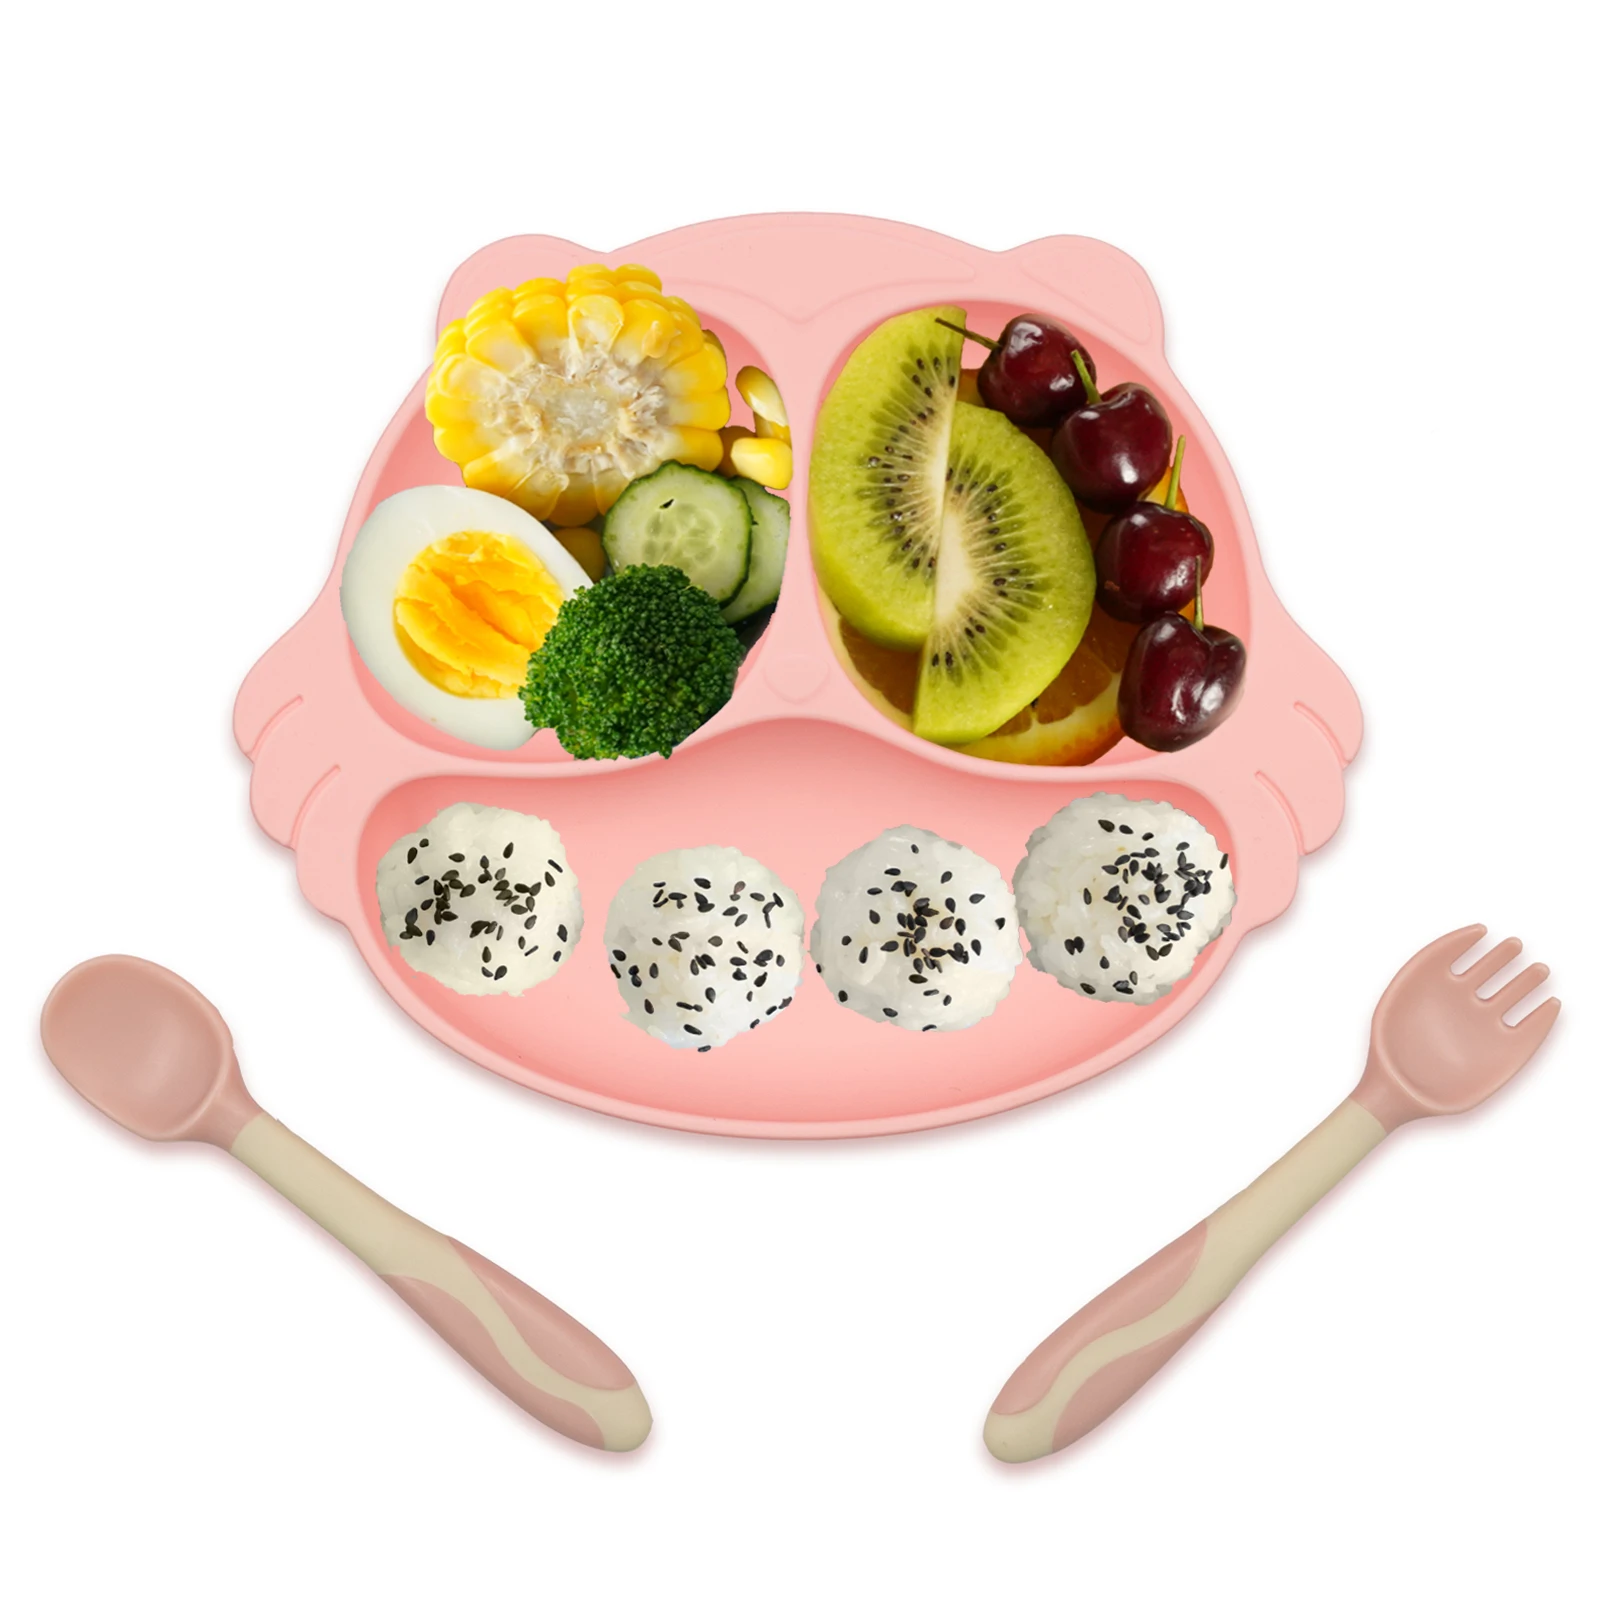 

Детская обеденная тарелка CUAIBB, детская Тарелка на присоске, тренировочная посуда для малышей, набор ретро-тарелки для кормления детей, без Б...